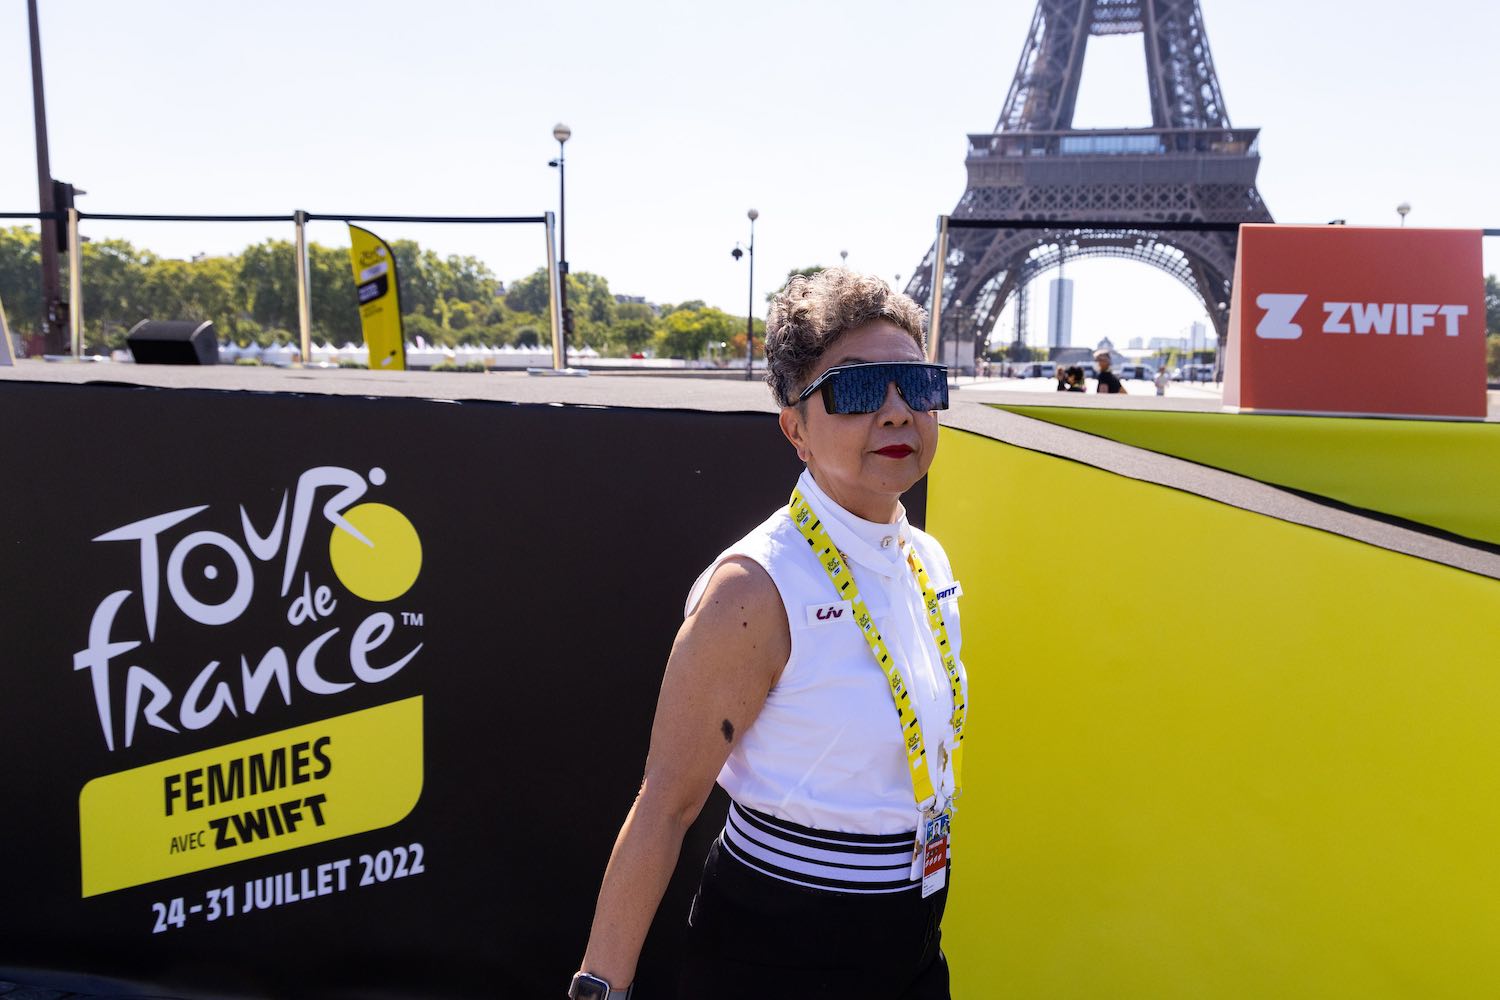 Liv Announces Premier Sponsorship of The Tour De France Femmes AVEC Zwift